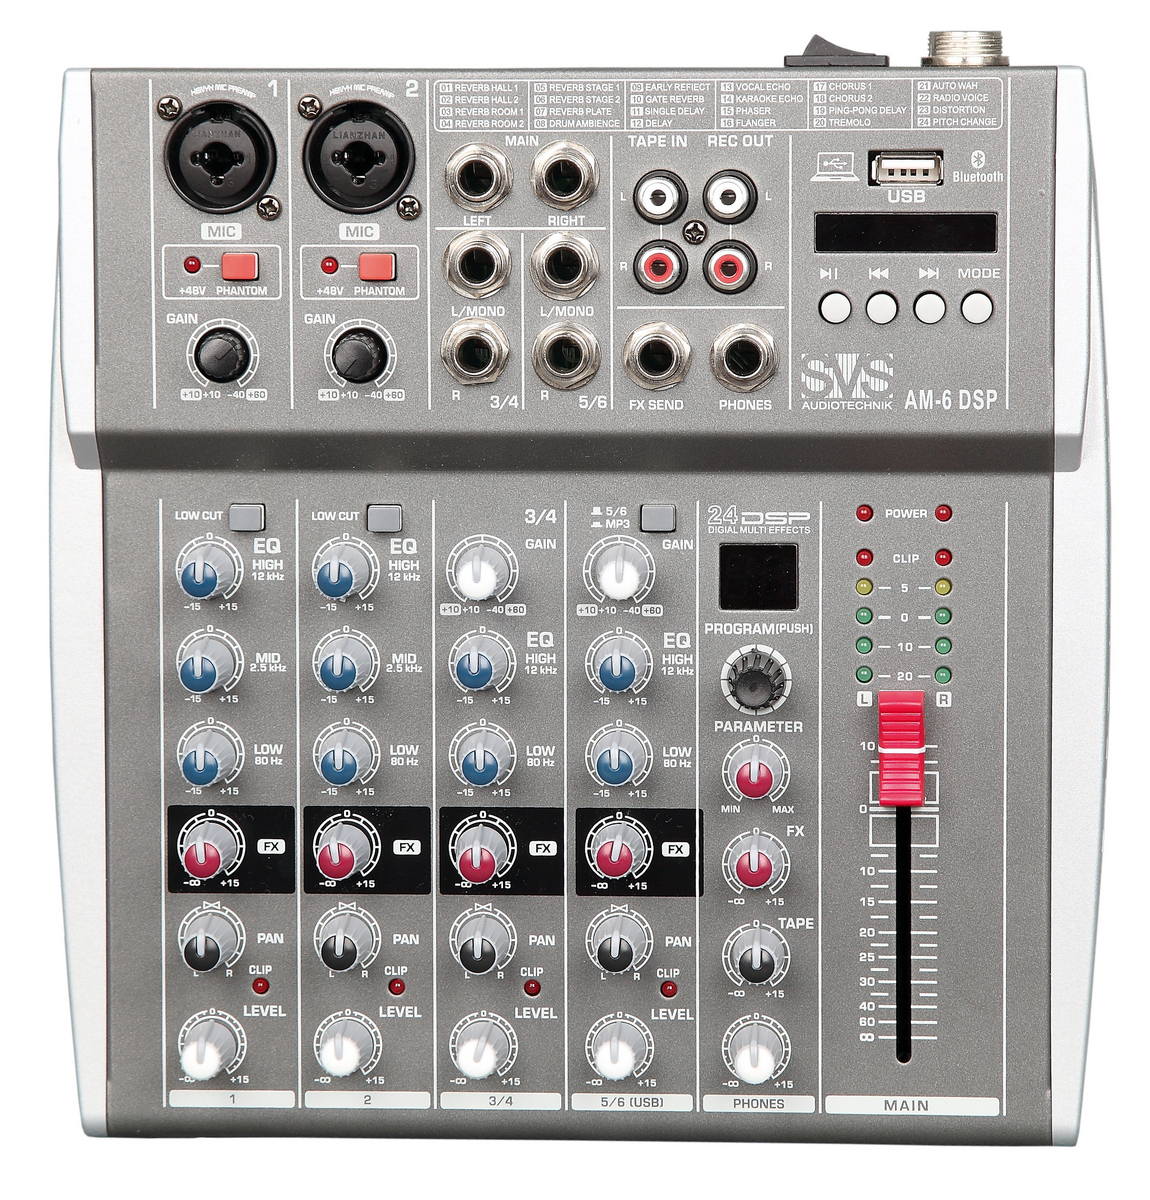 Микшерные пульты аналоговые SVS Audiotechnik mixers AM-6 DSP